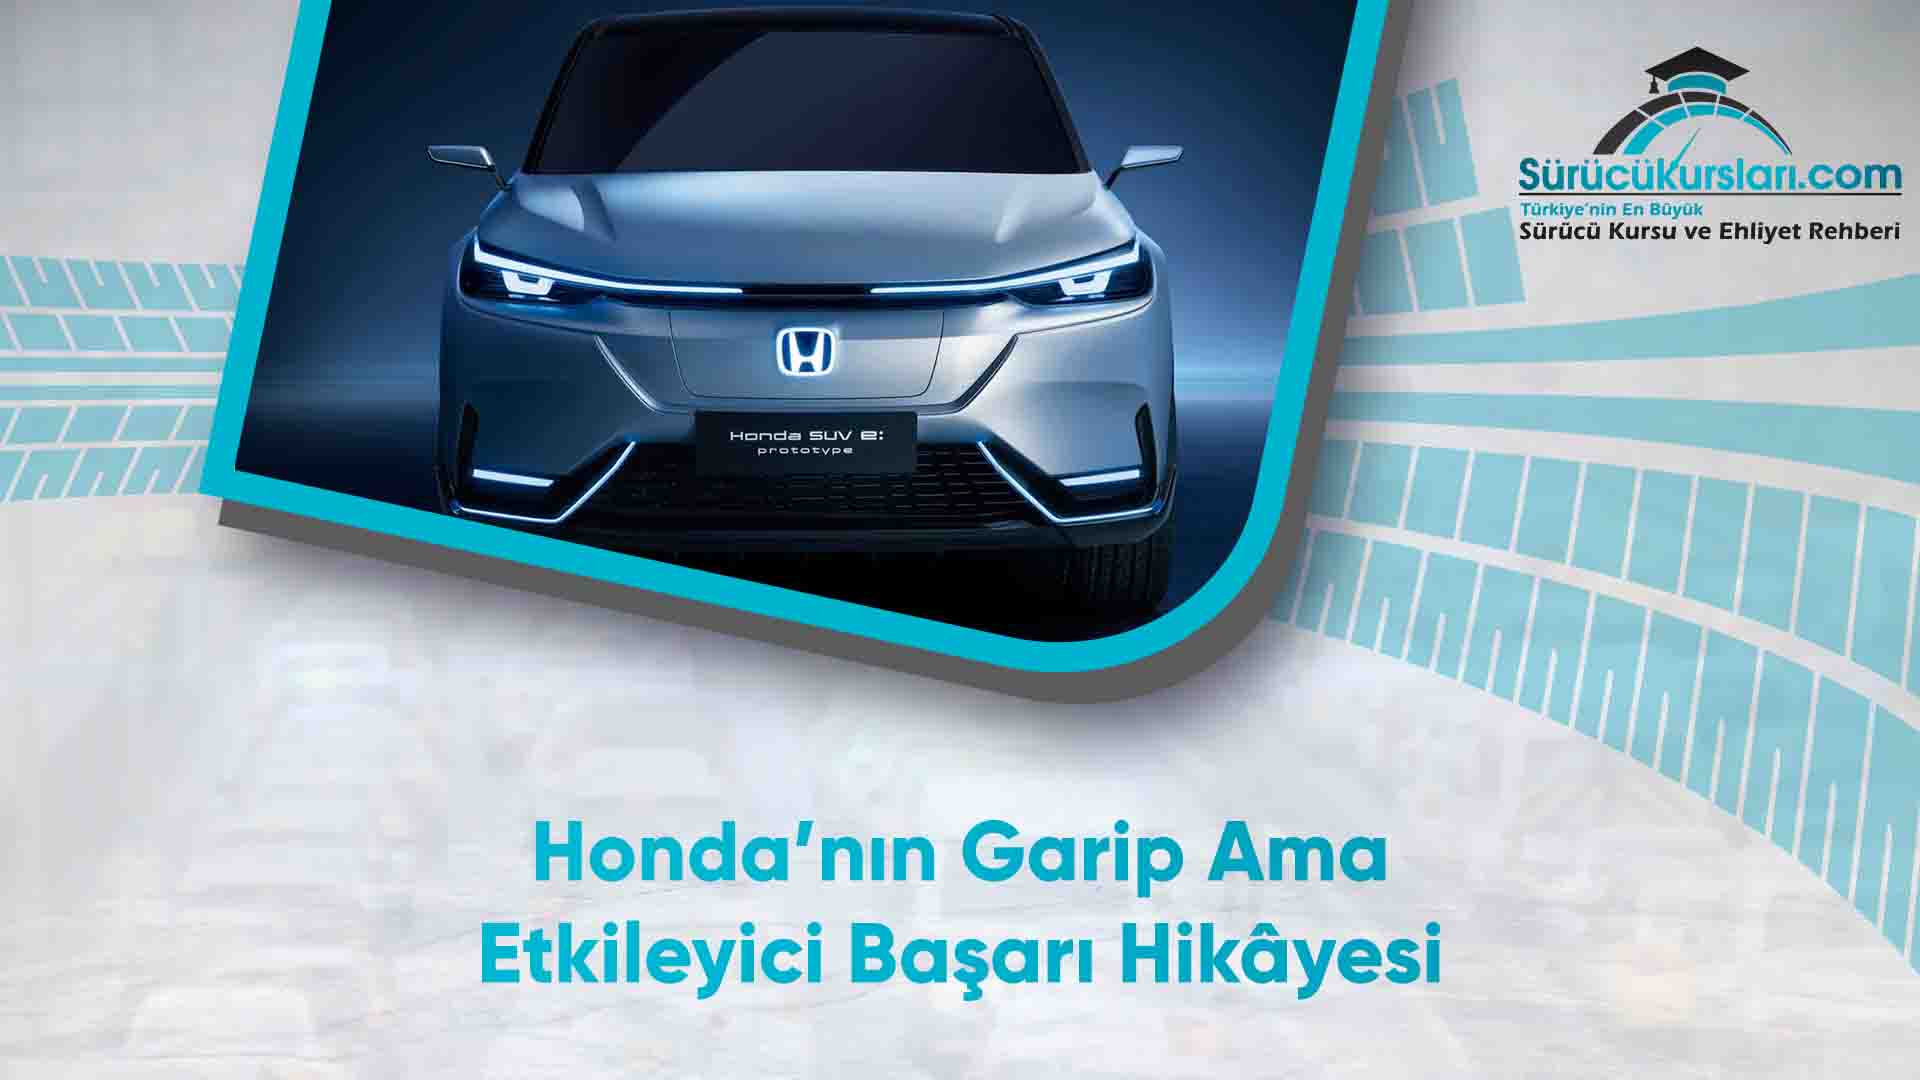 Honda’nın Garip Ama Etkileyici Başarı Hikâyesi